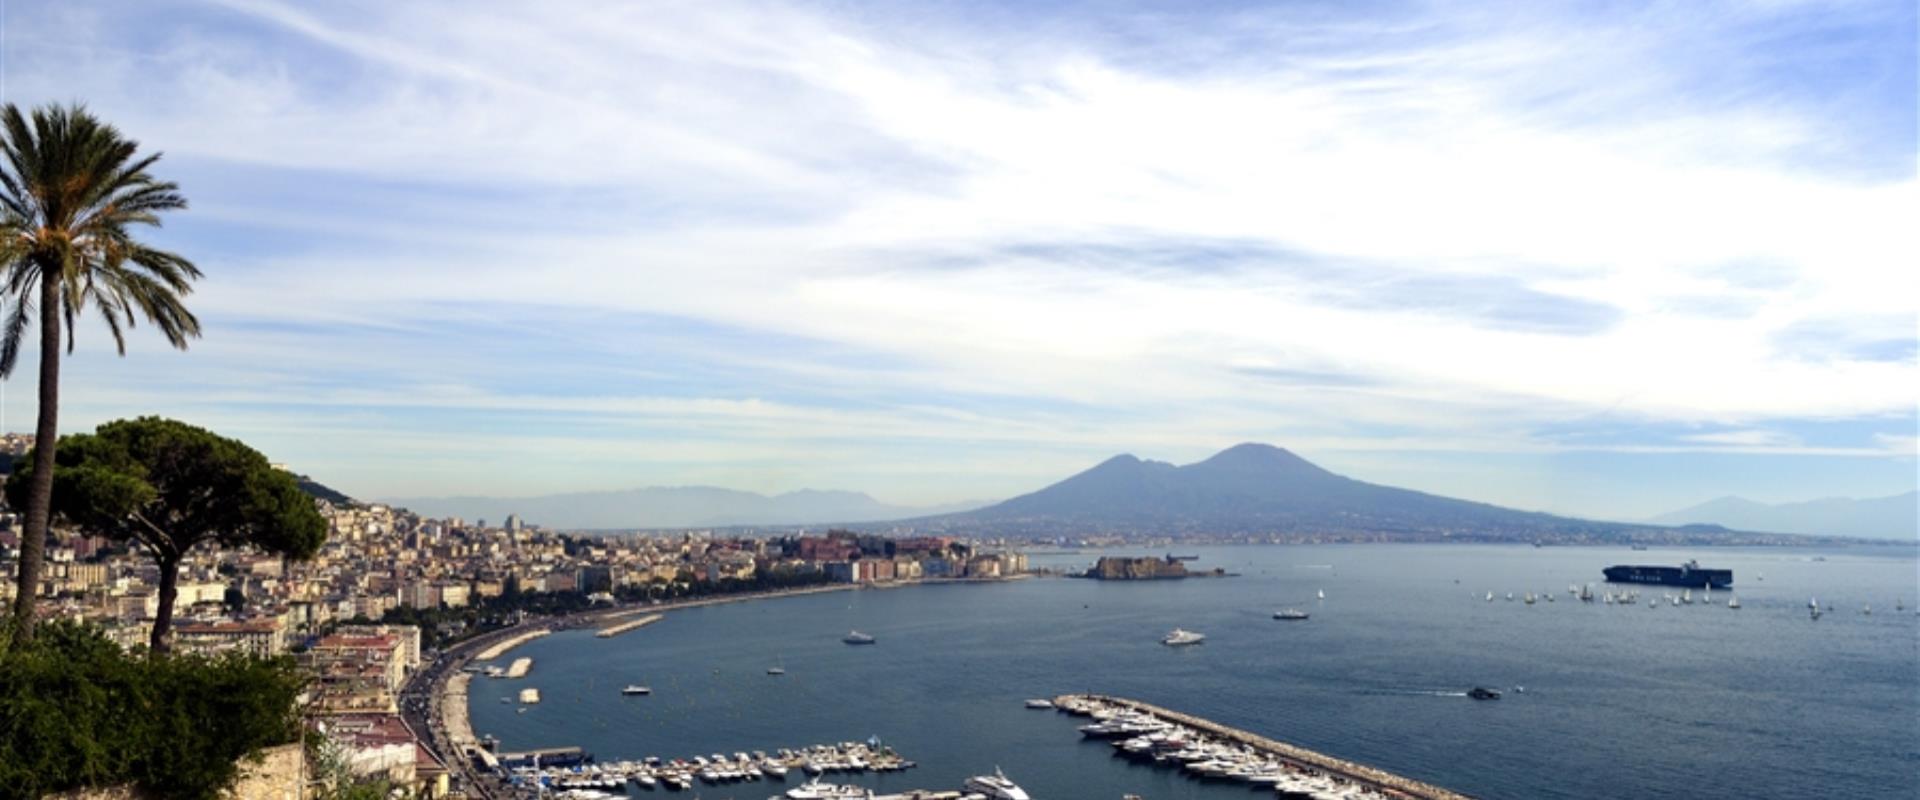 El BW Signature Collection Hotel Paradiso es el lugar ideal para tus vacaciones en Napoli.